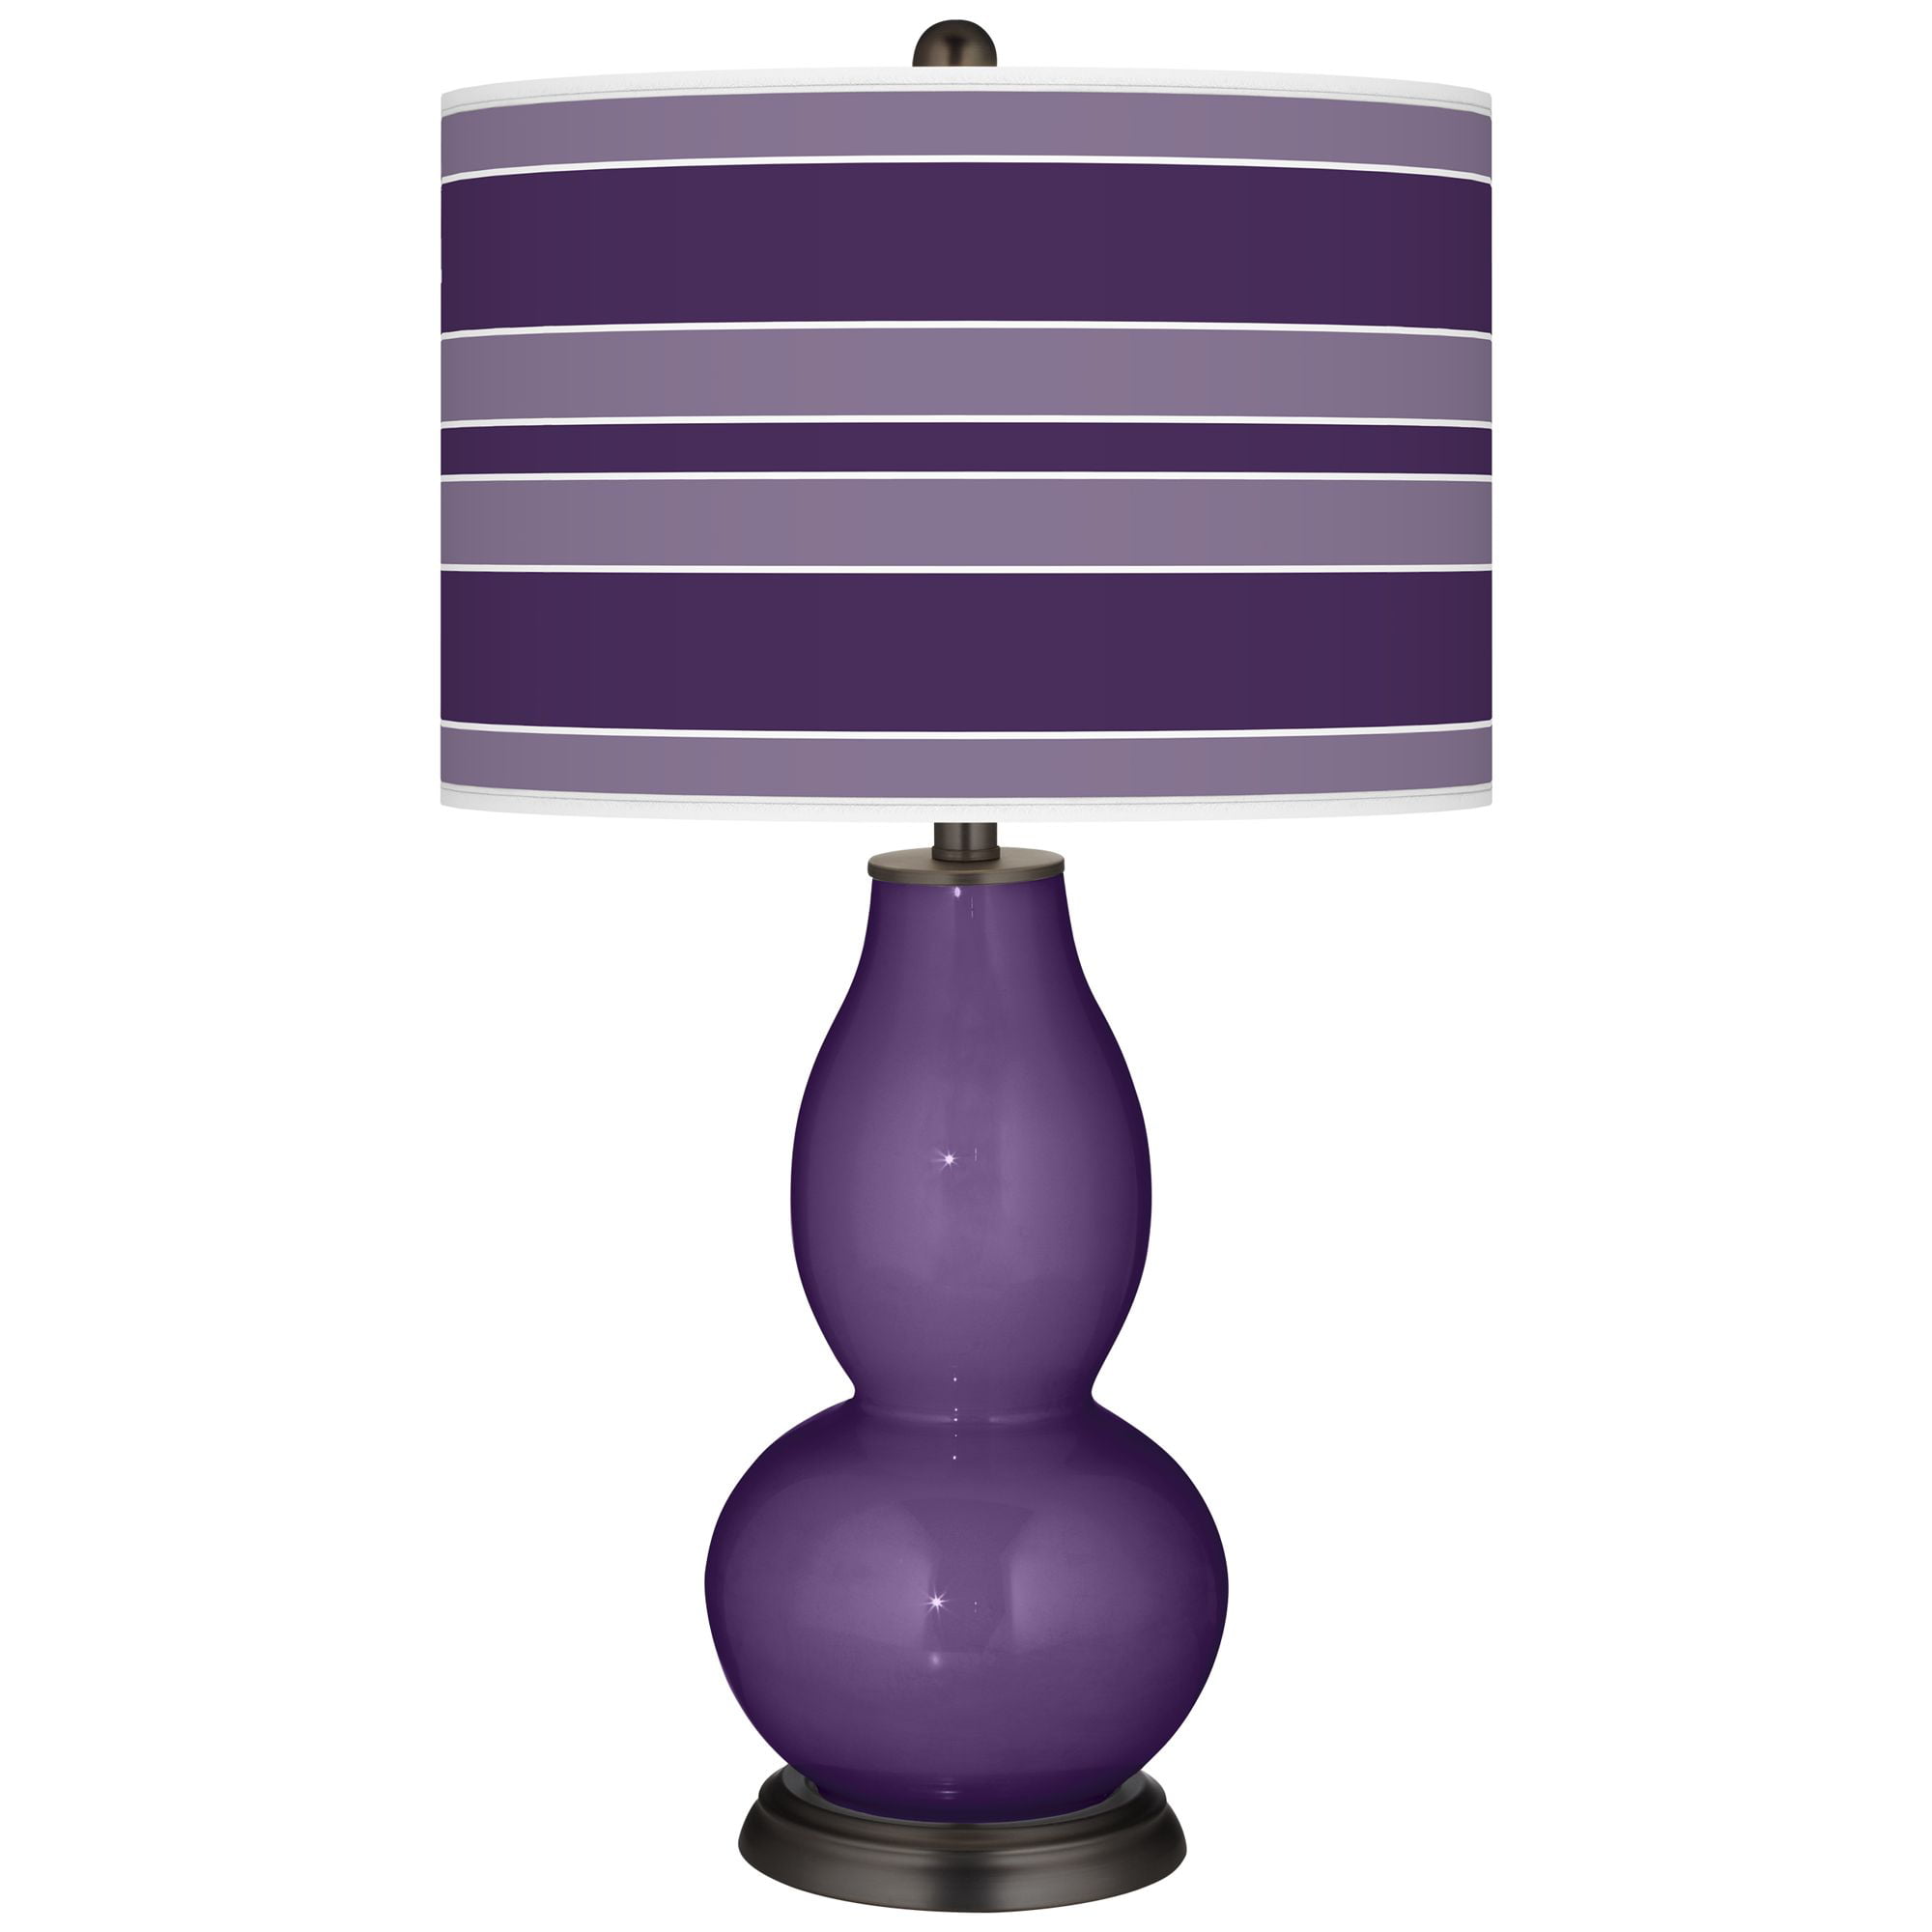 Color + Plus Acai Bold Stripe Double Gourd Table Lamp - Walmart.com